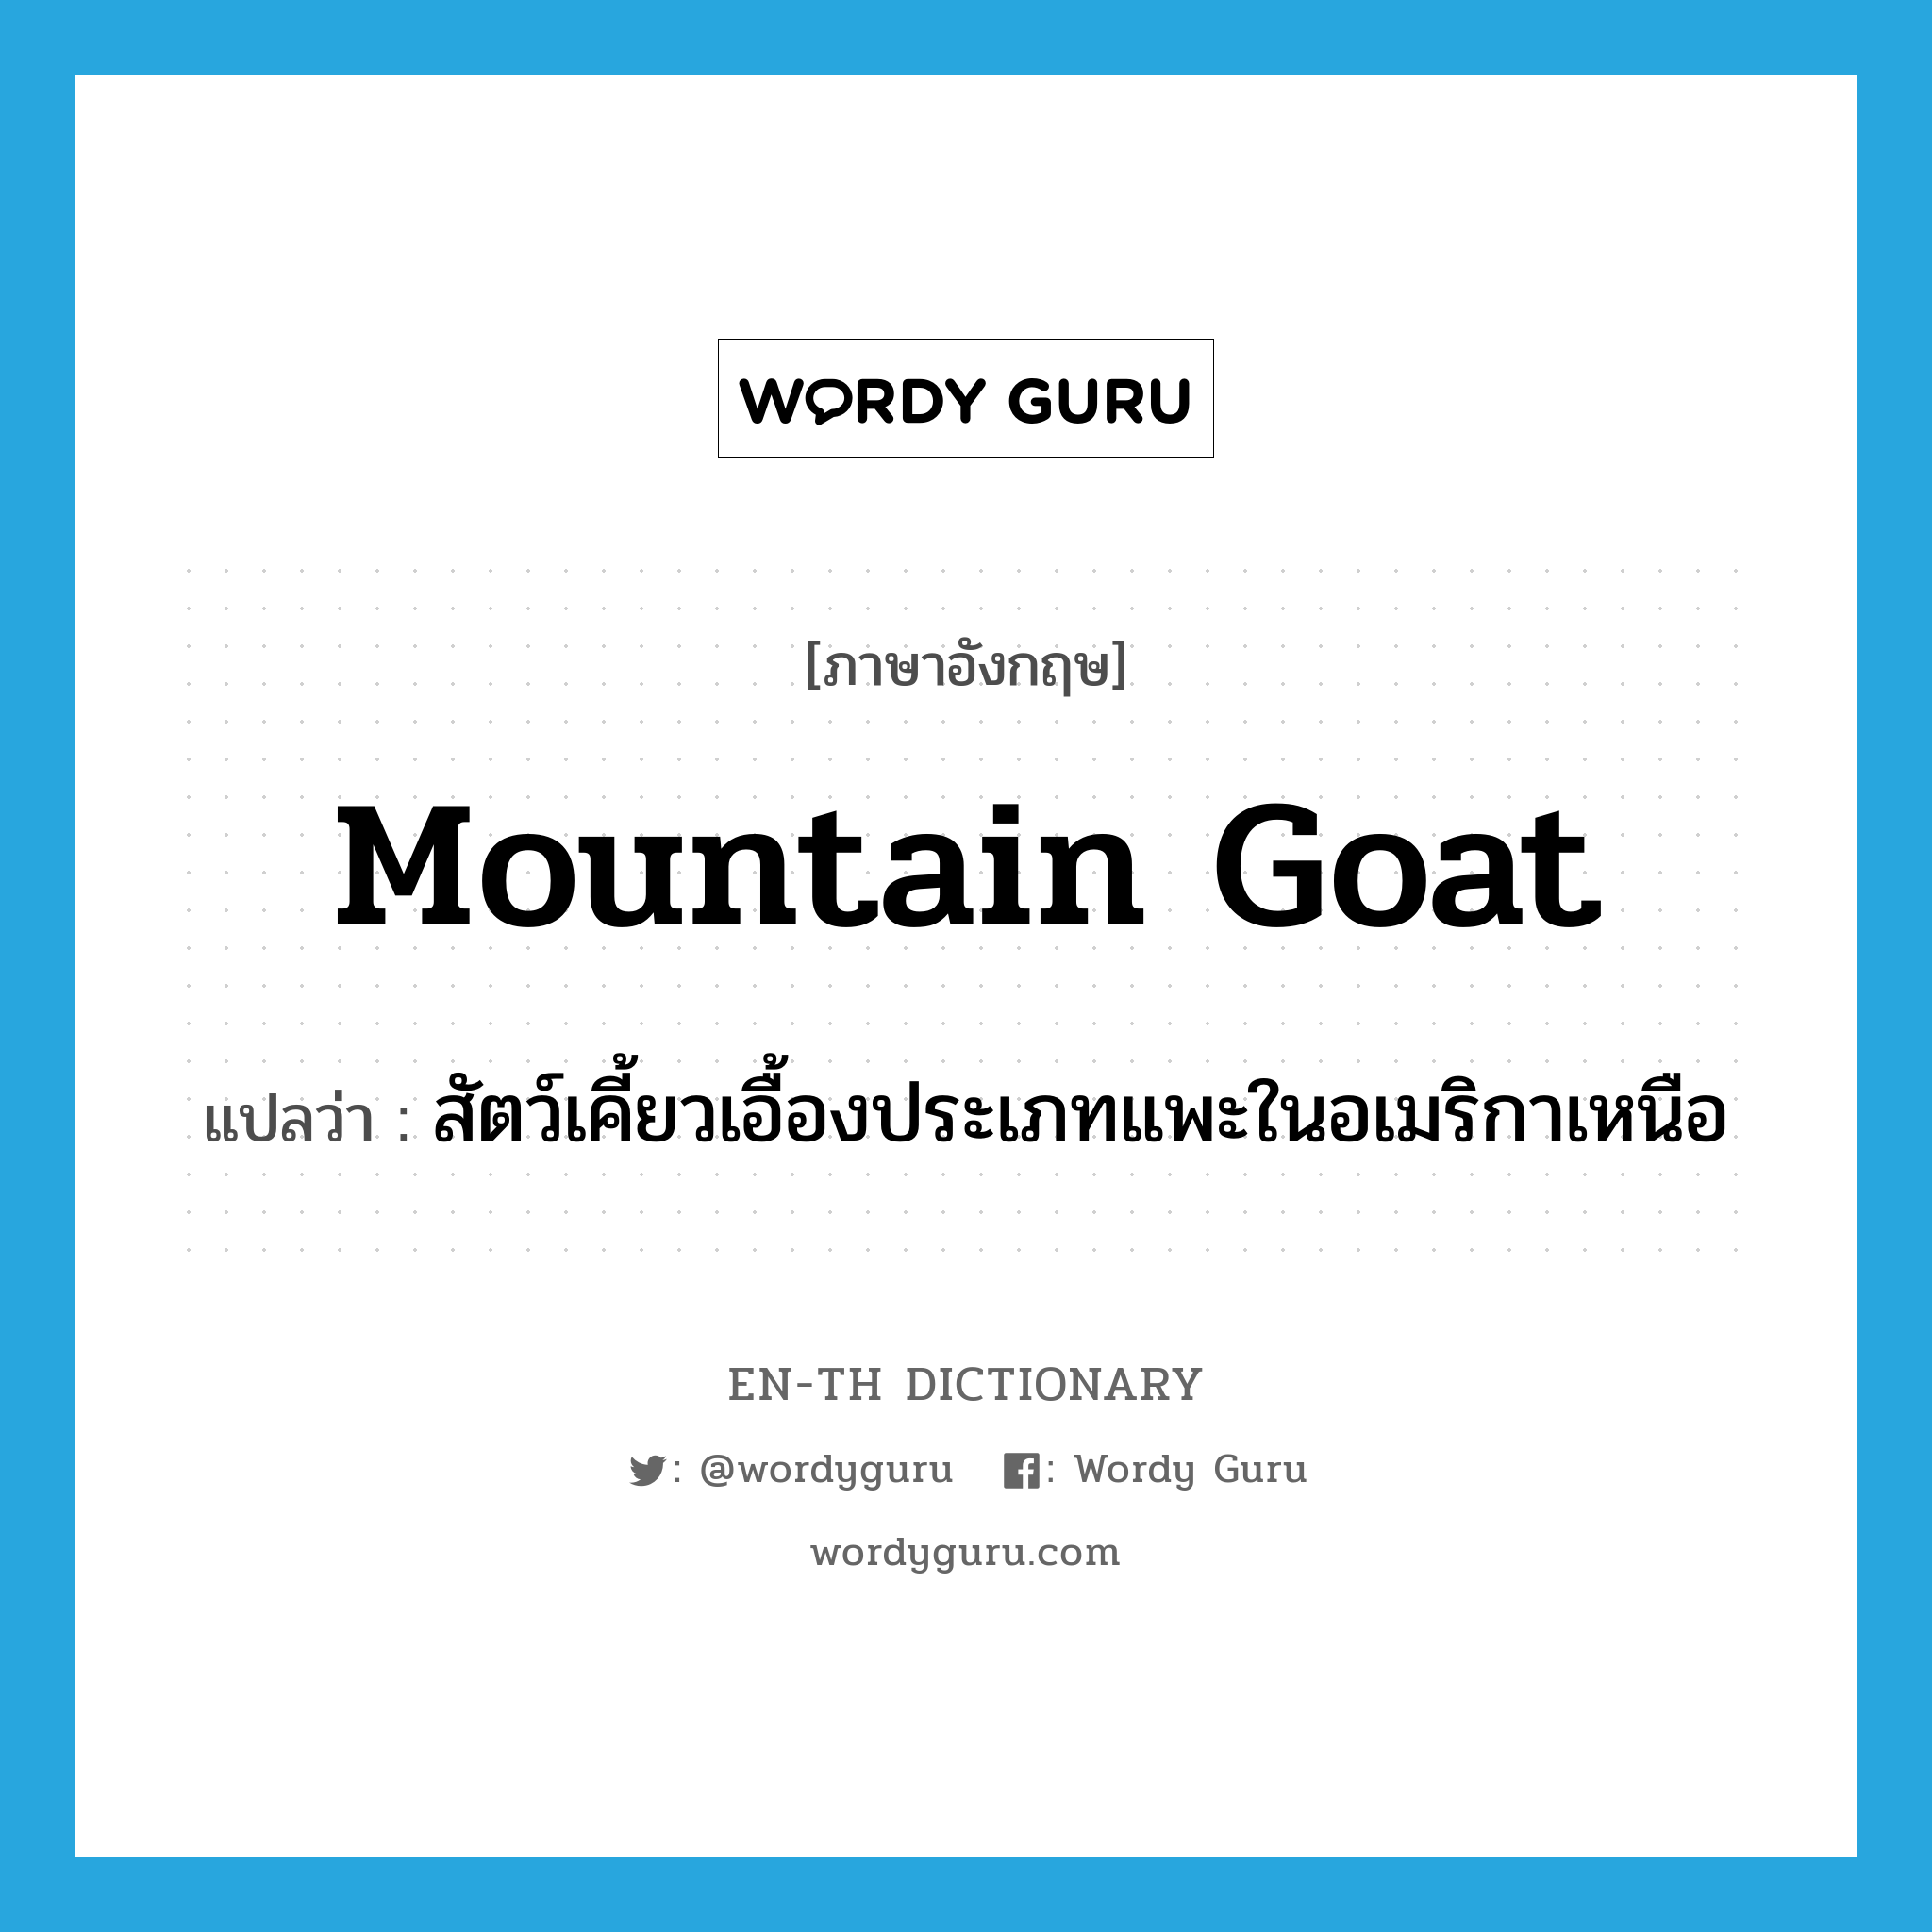 สัตว์เคี้ยวเอื้องประเภทแพะในอเมริกาเหนือ ภาษาอังกฤษ?, คำศัพท์ภาษาอังกฤษ สัตว์เคี้ยวเอื้องประเภทแพะในอเมริกาเหนือ แปลว่า mountain goat ประเภท N หมวด N